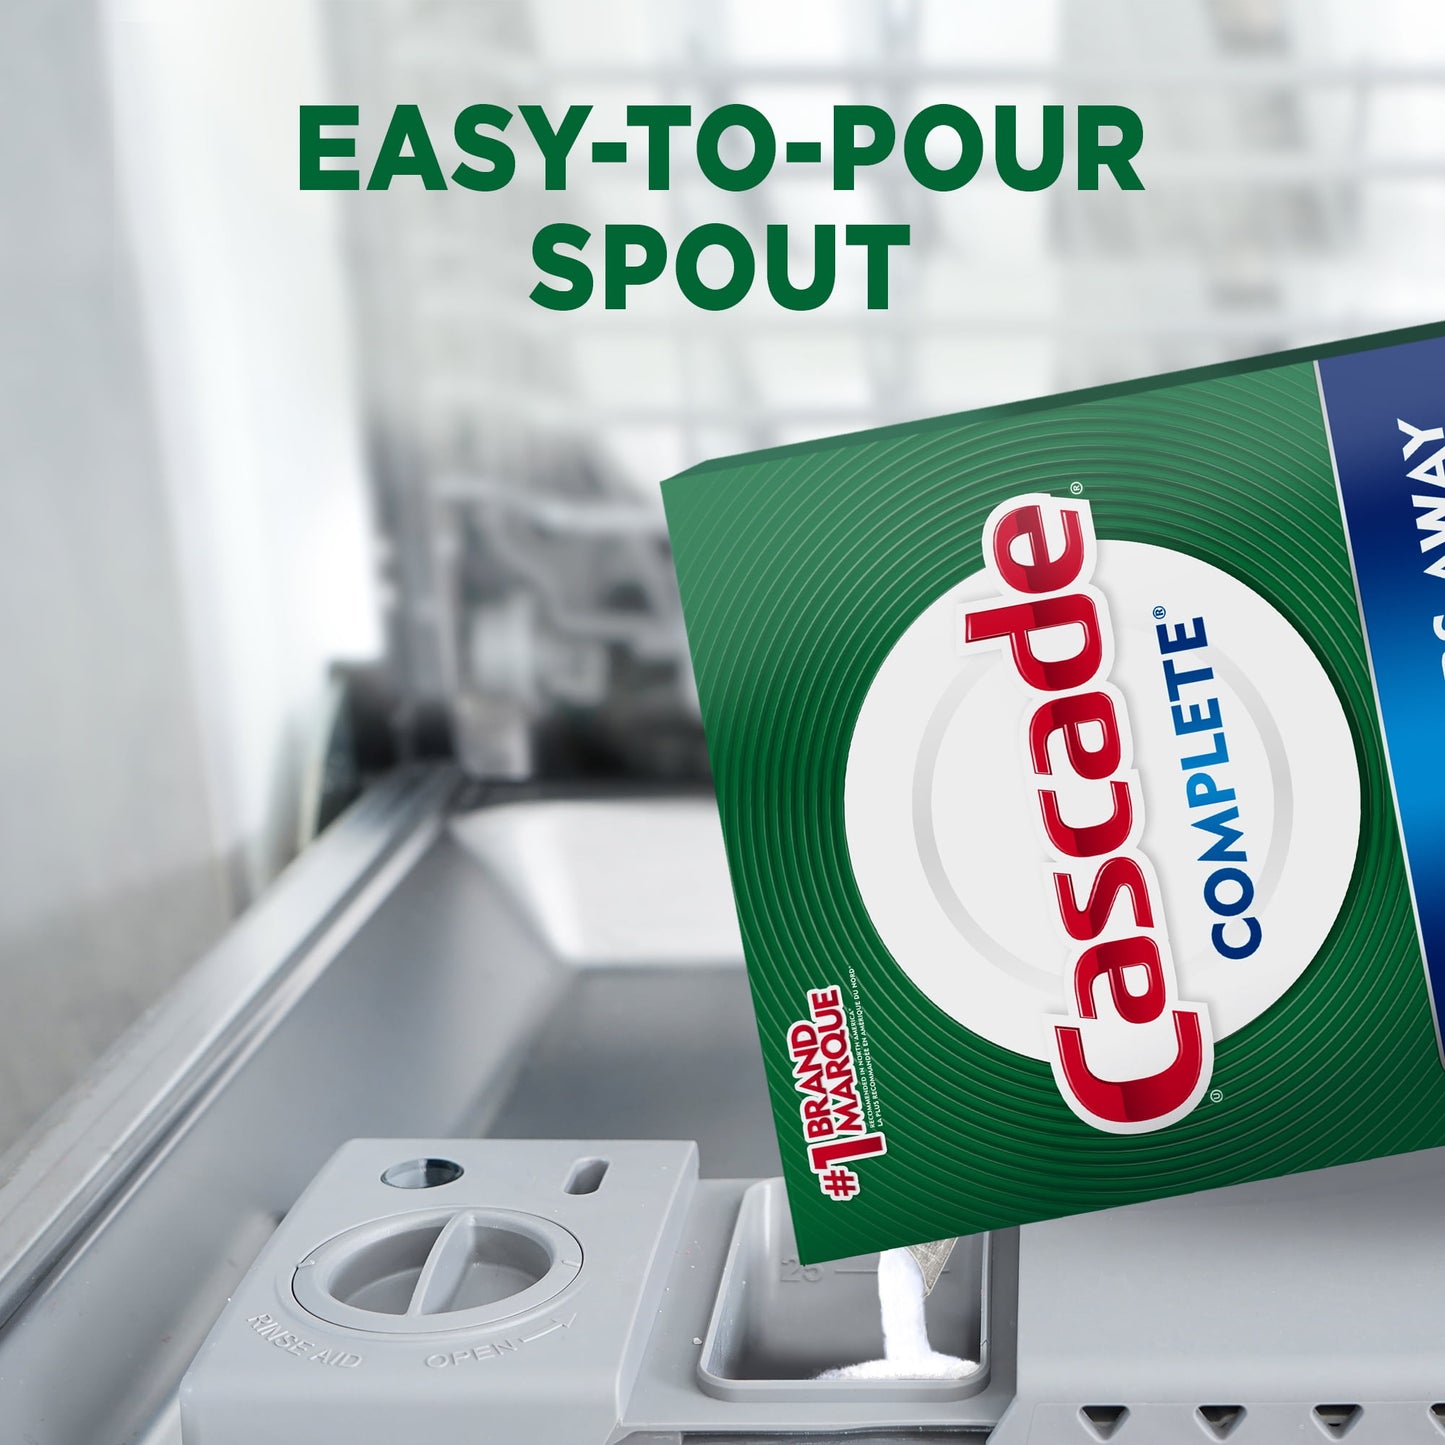 Cascade Complete Powder Dishwasher Detergent, Fresh Scent, 75 oz